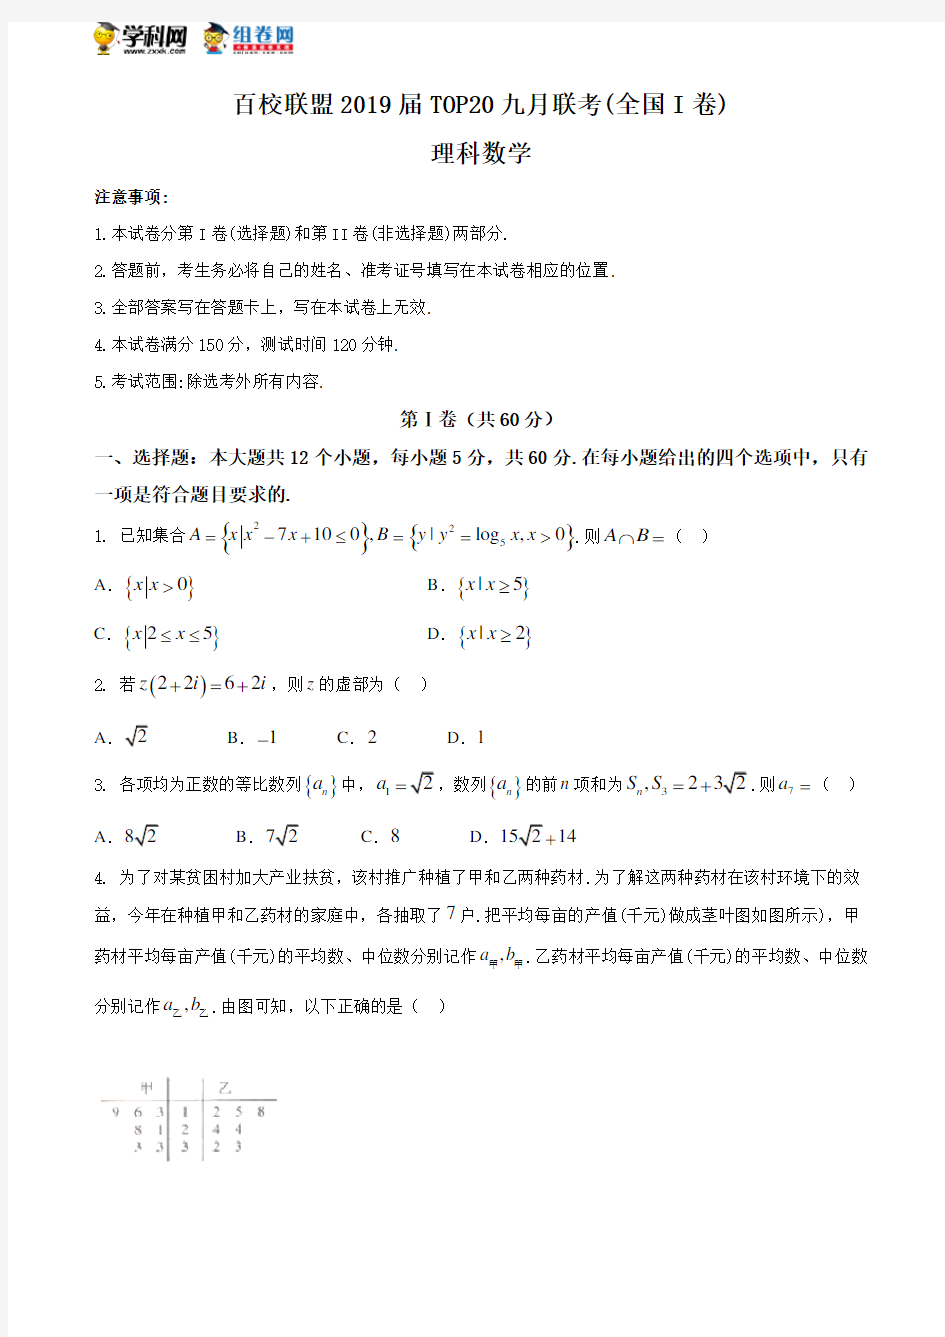 百校联盟2019届高三TOP20九月联考(全国Ⅰ卷)  理科数学